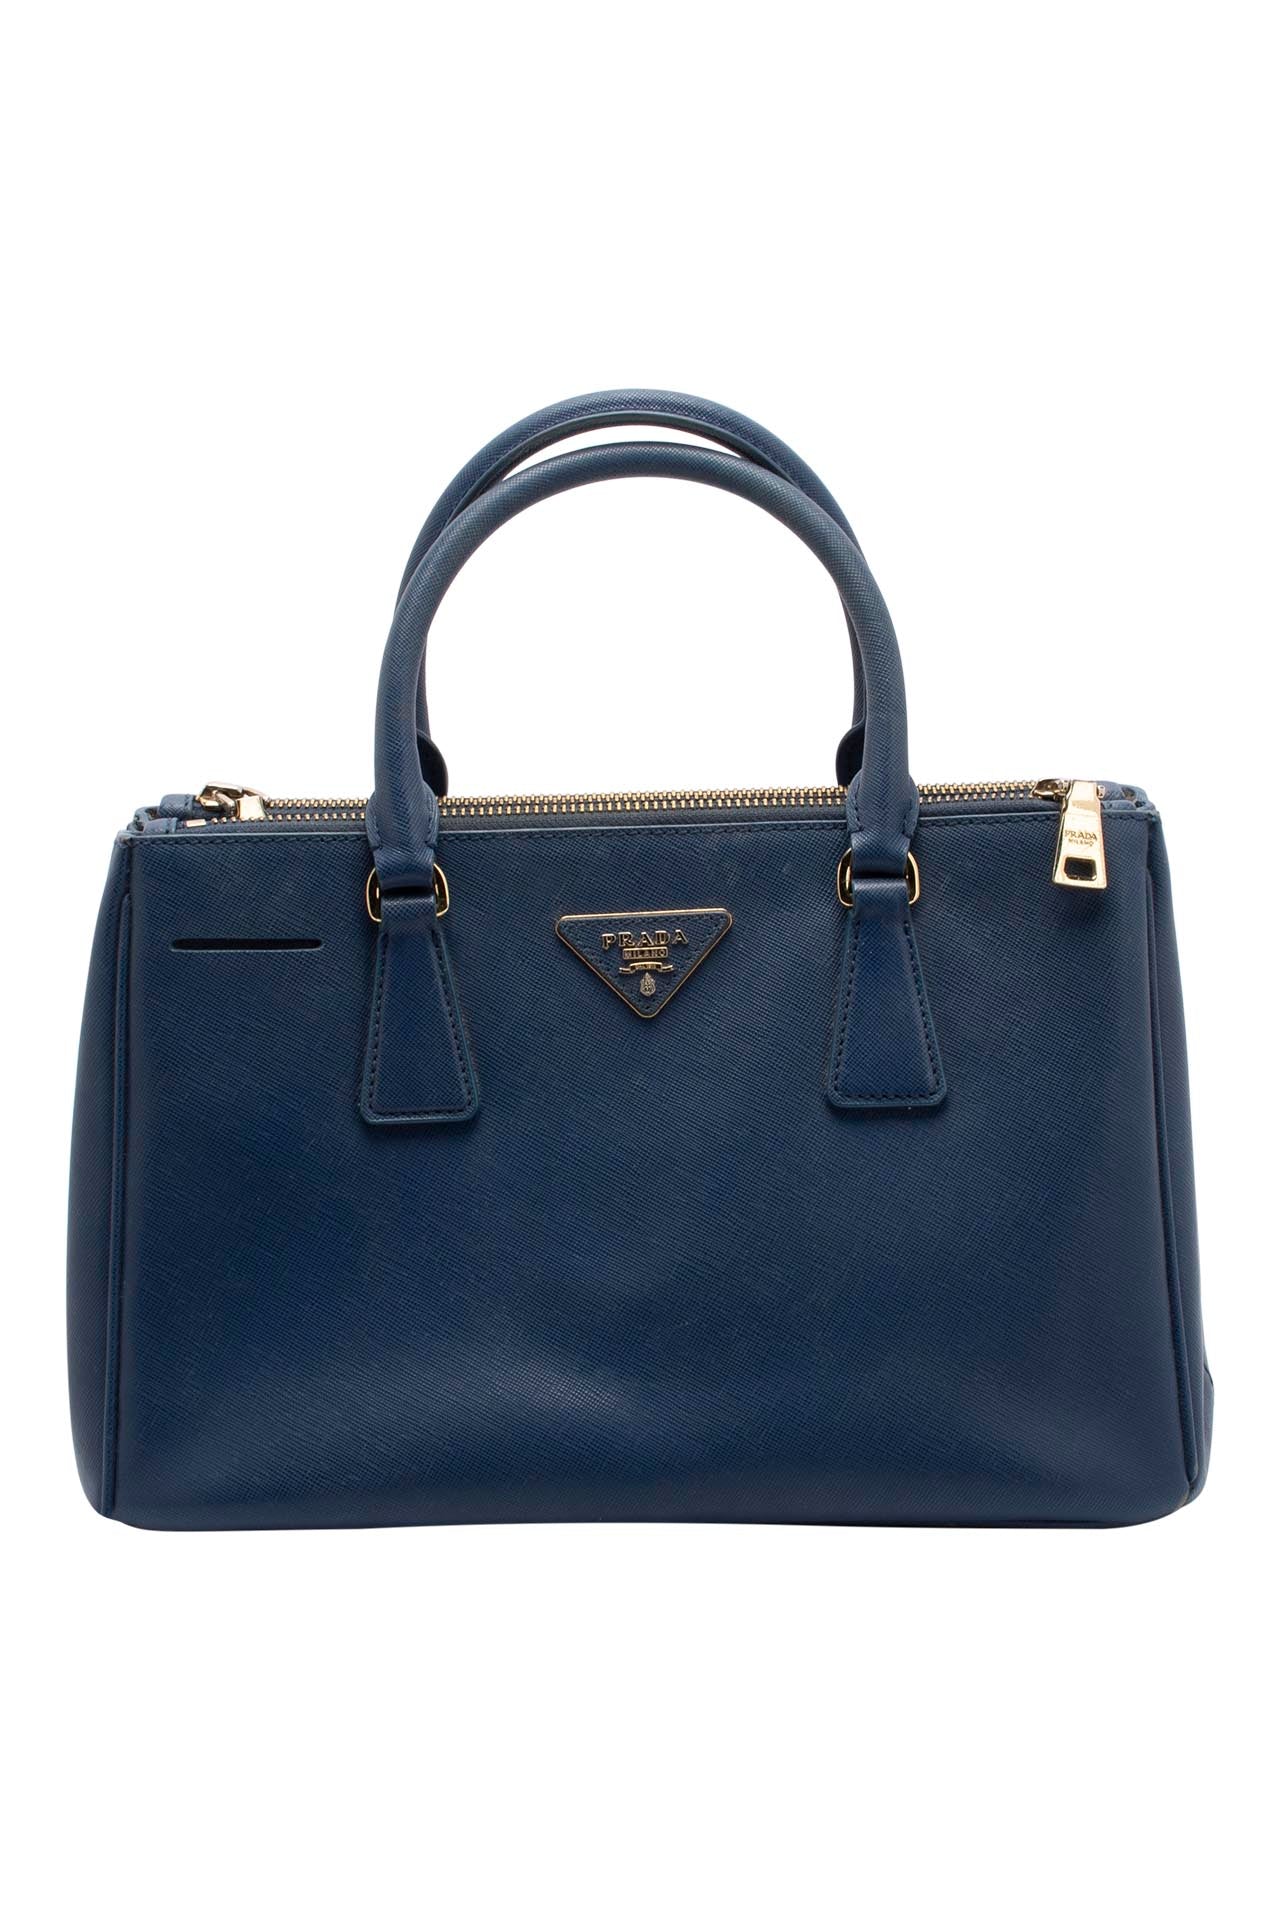 Prada - Vintage Beige Leather Bag - Shoulder bag in Italy